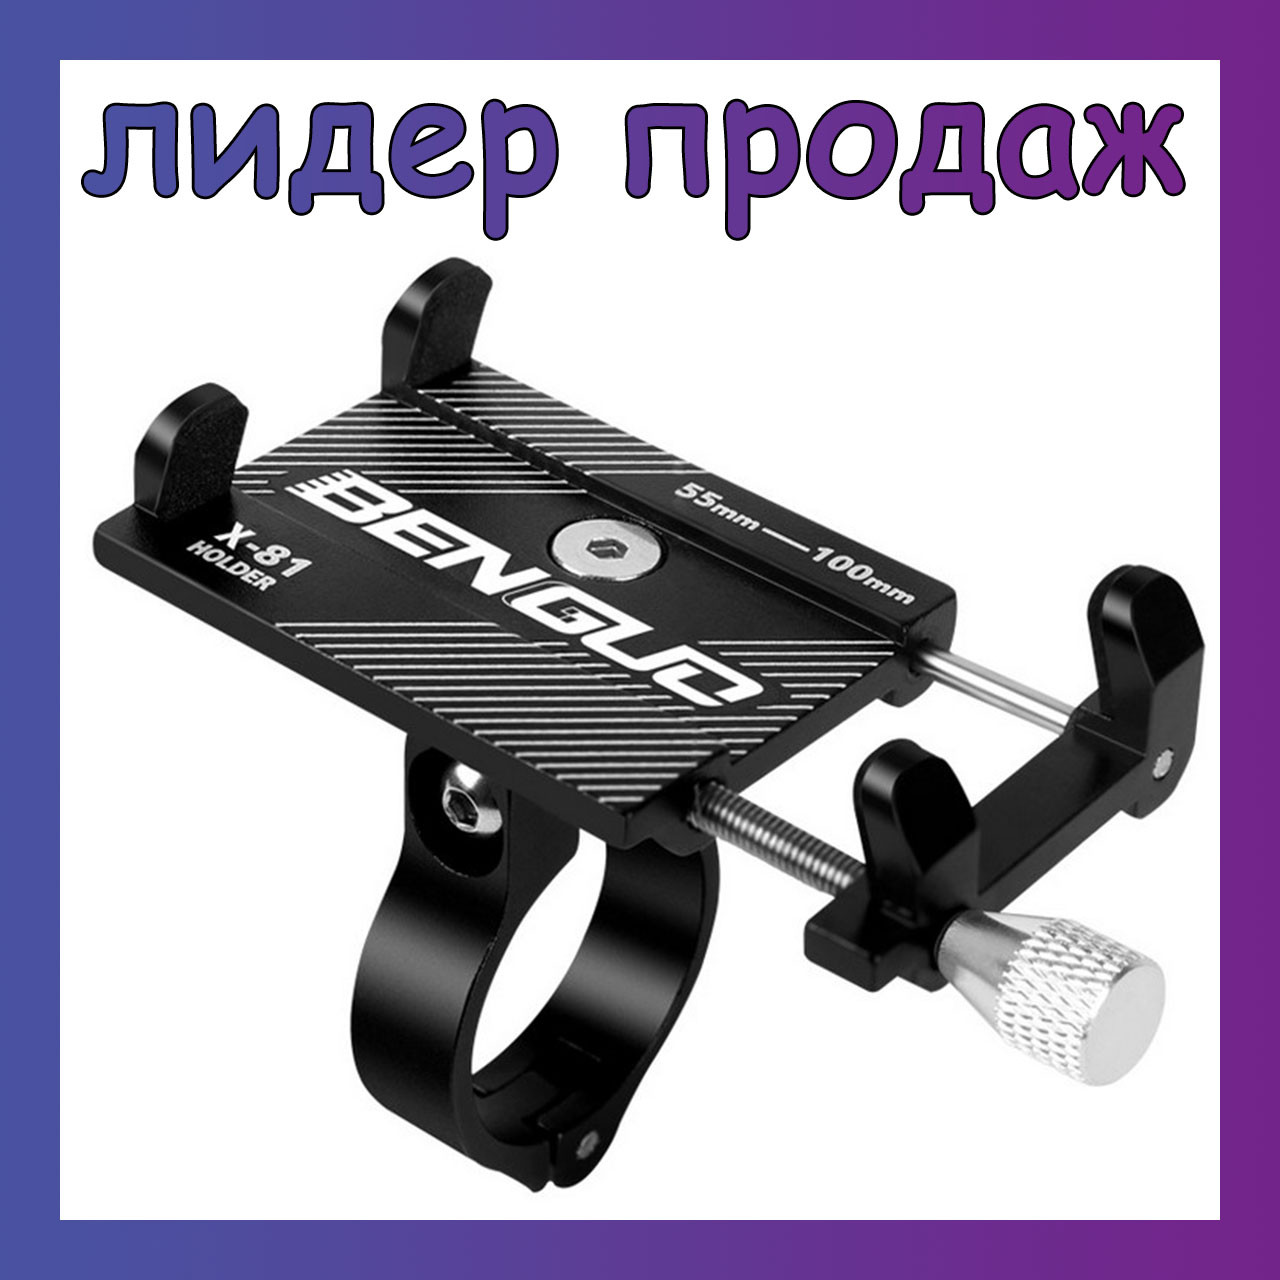 Надійний алюмінієвий тримач для телефону на кермо велосипеда bengud x-81 (велодержатель, кріплення, затискач)